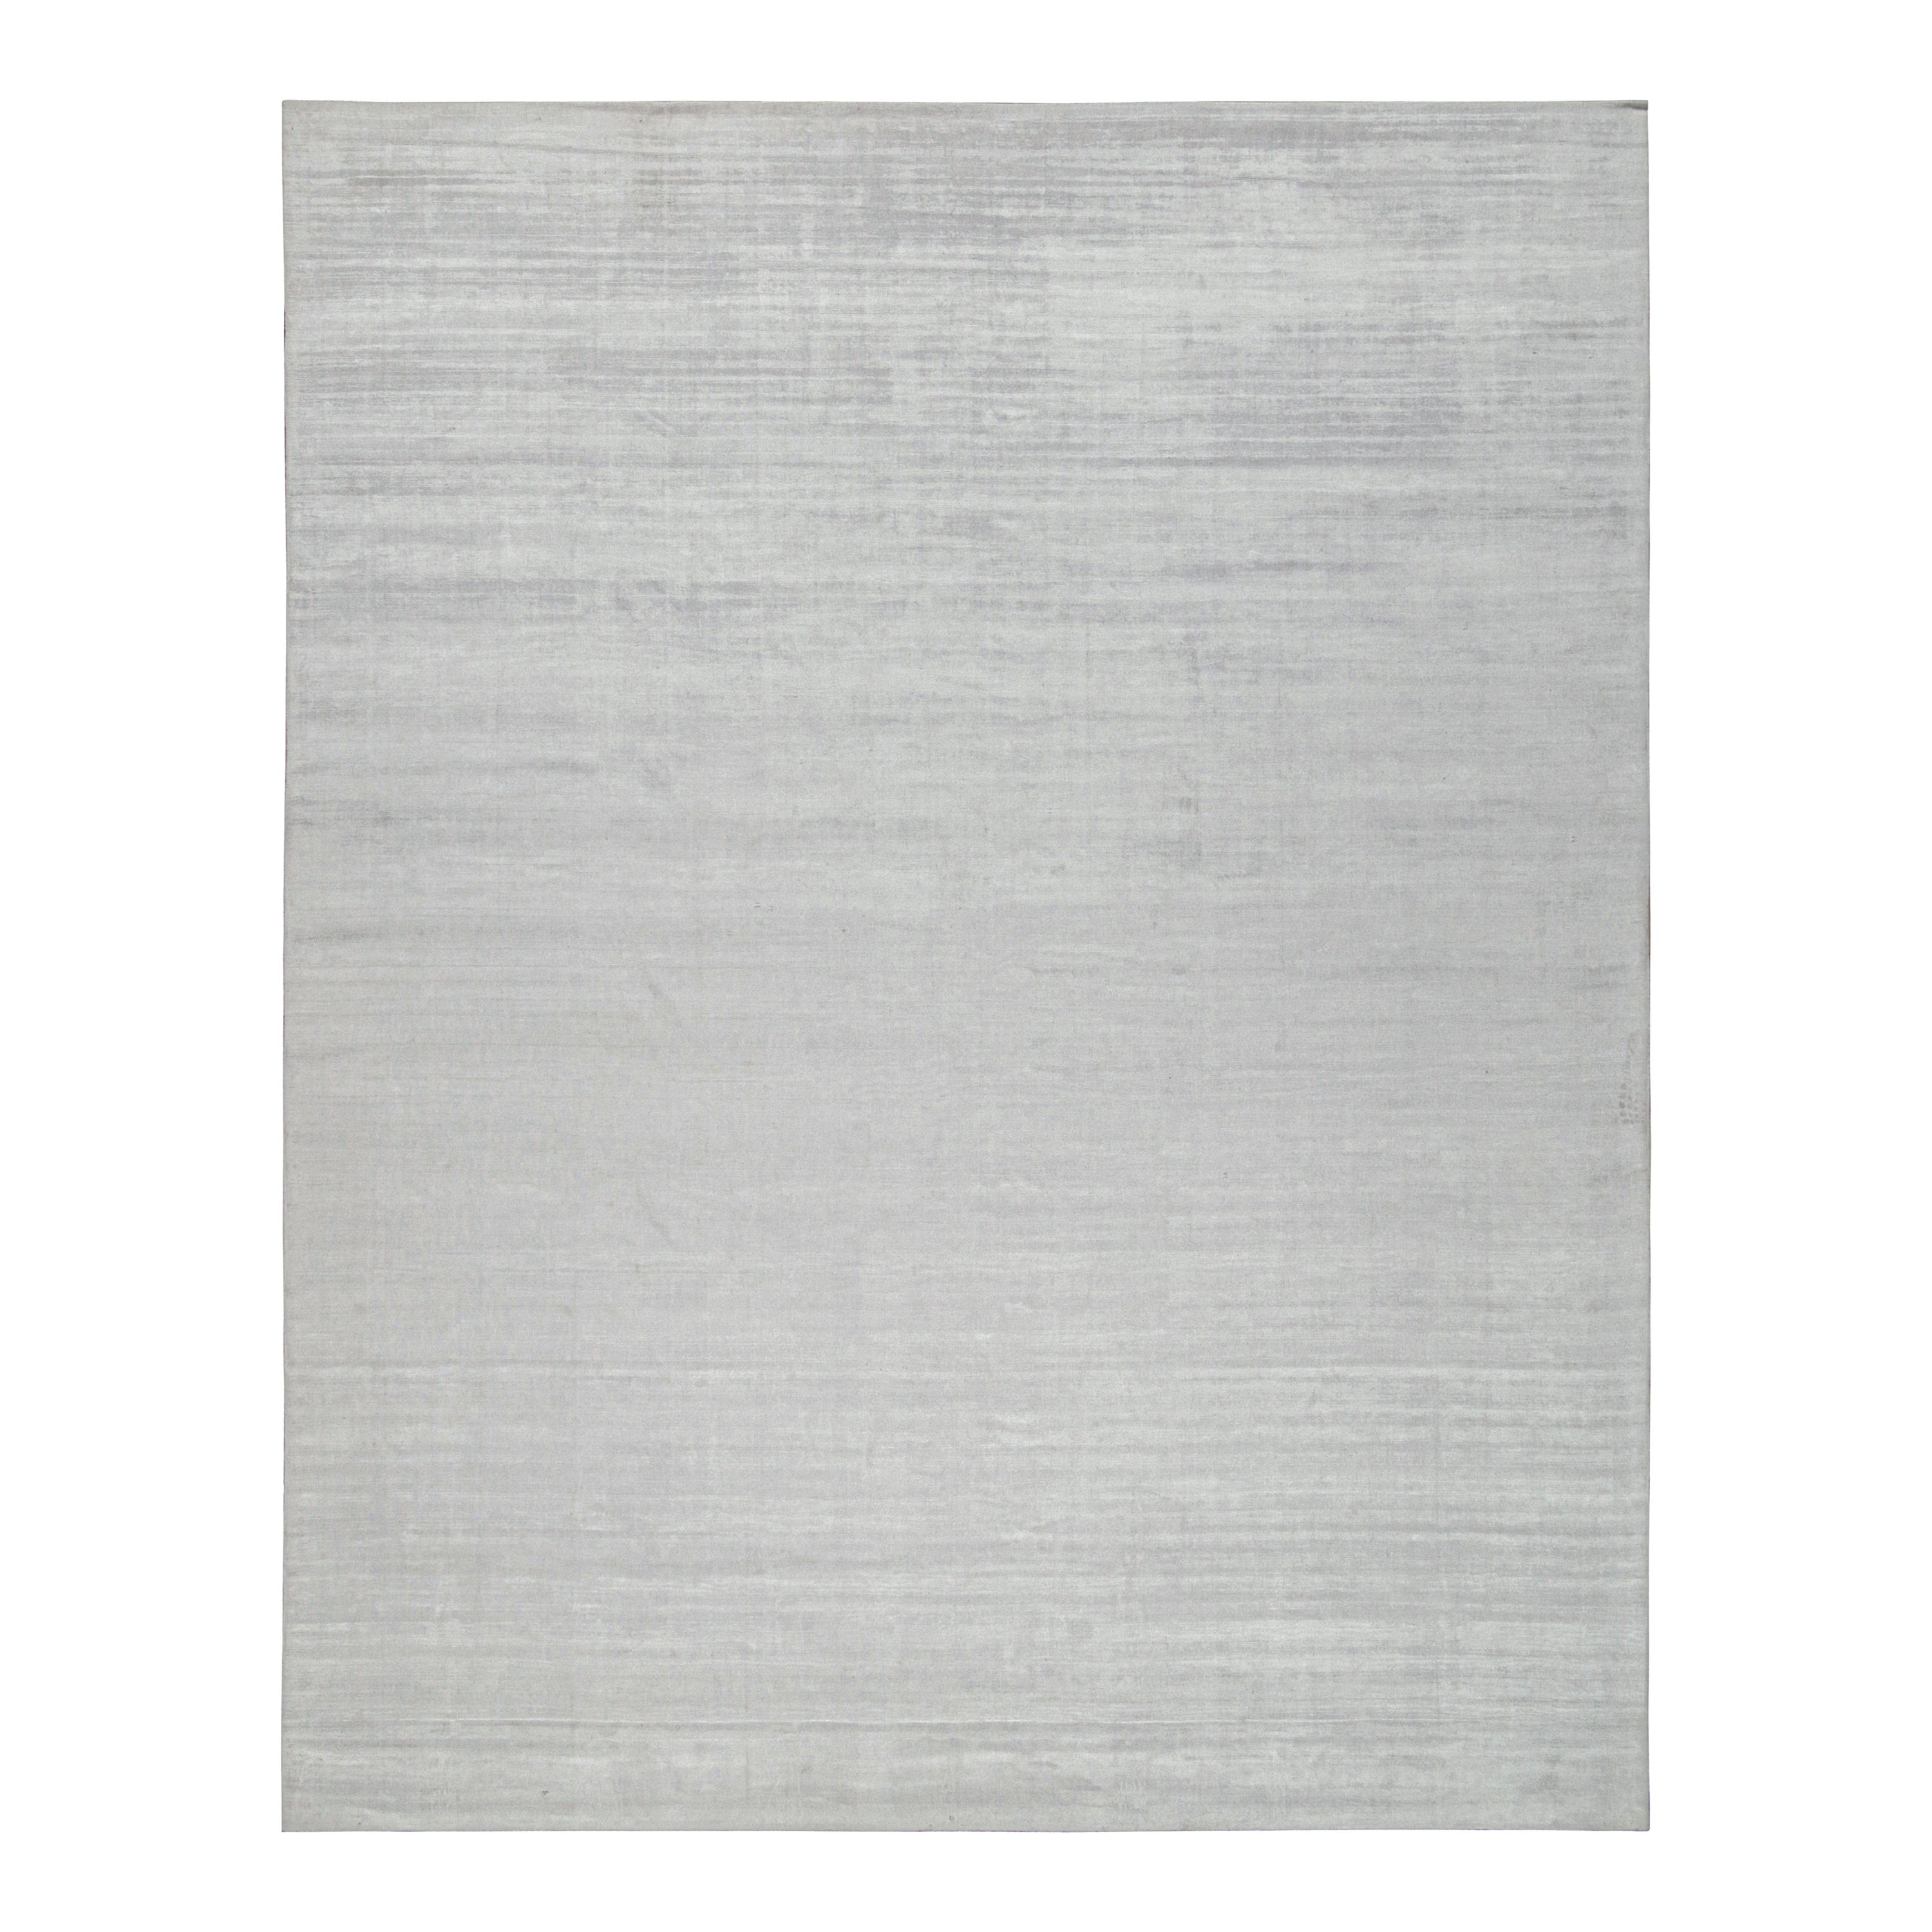 Ce tapis contemporain de 12x15 est une grande nouveauté de la collection Texture of Color de Rug & Kilim. Noué à la main en soie d'art et en coton. 

Les connaisseurs remarqueront que cette pièce fait partie de notre nouvelle gamme Light on Loom,